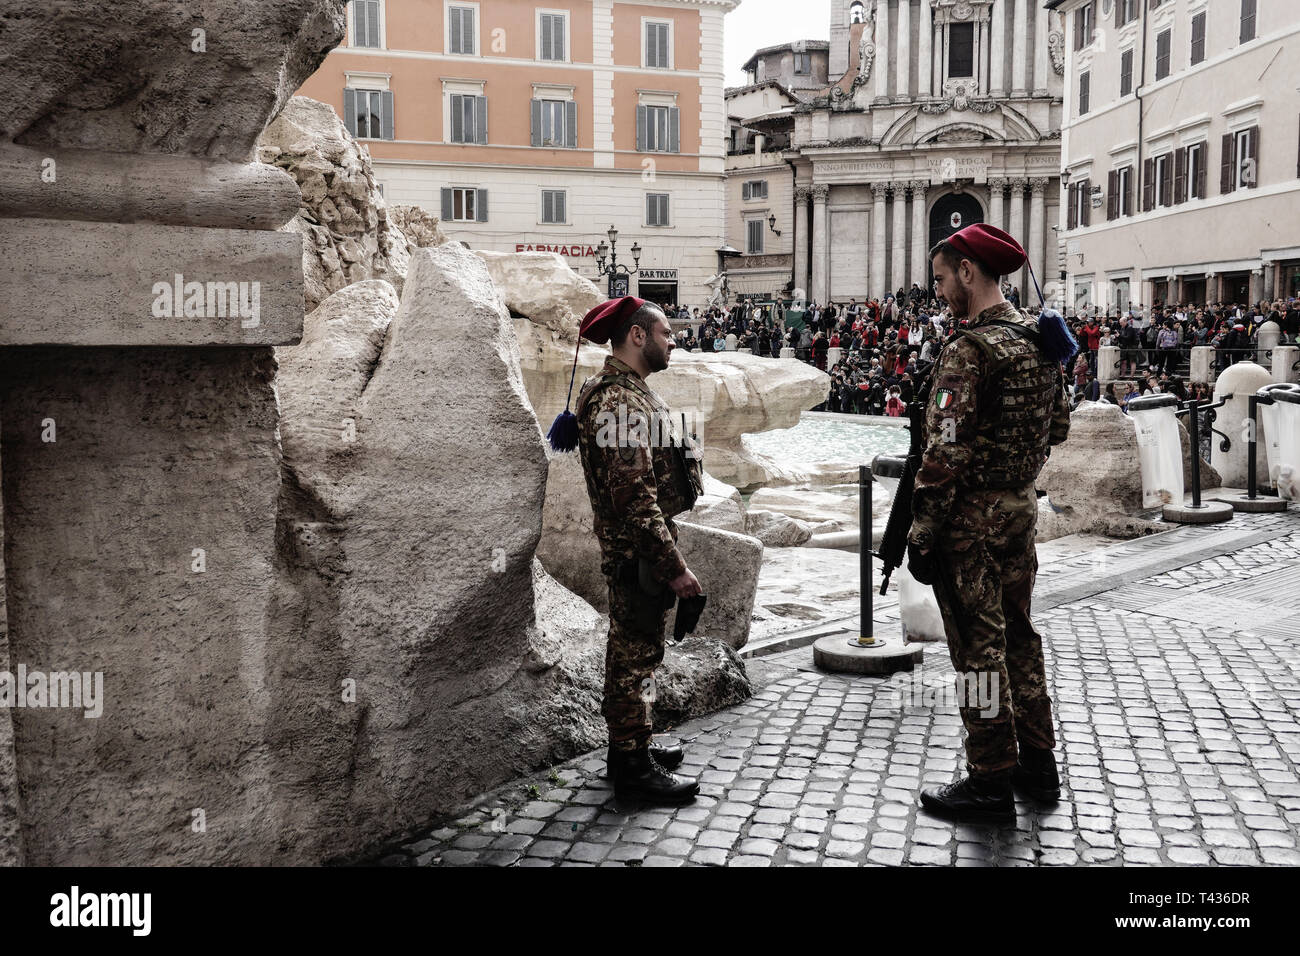 Soldaten sichern den Trevi Brunnen, die Fontana di Trevi, als Tausende von Touristen strömen in die Stadt Rom. Paare von bewaffneten Soldaten im Kampf Uniformen sind e Stockfoto